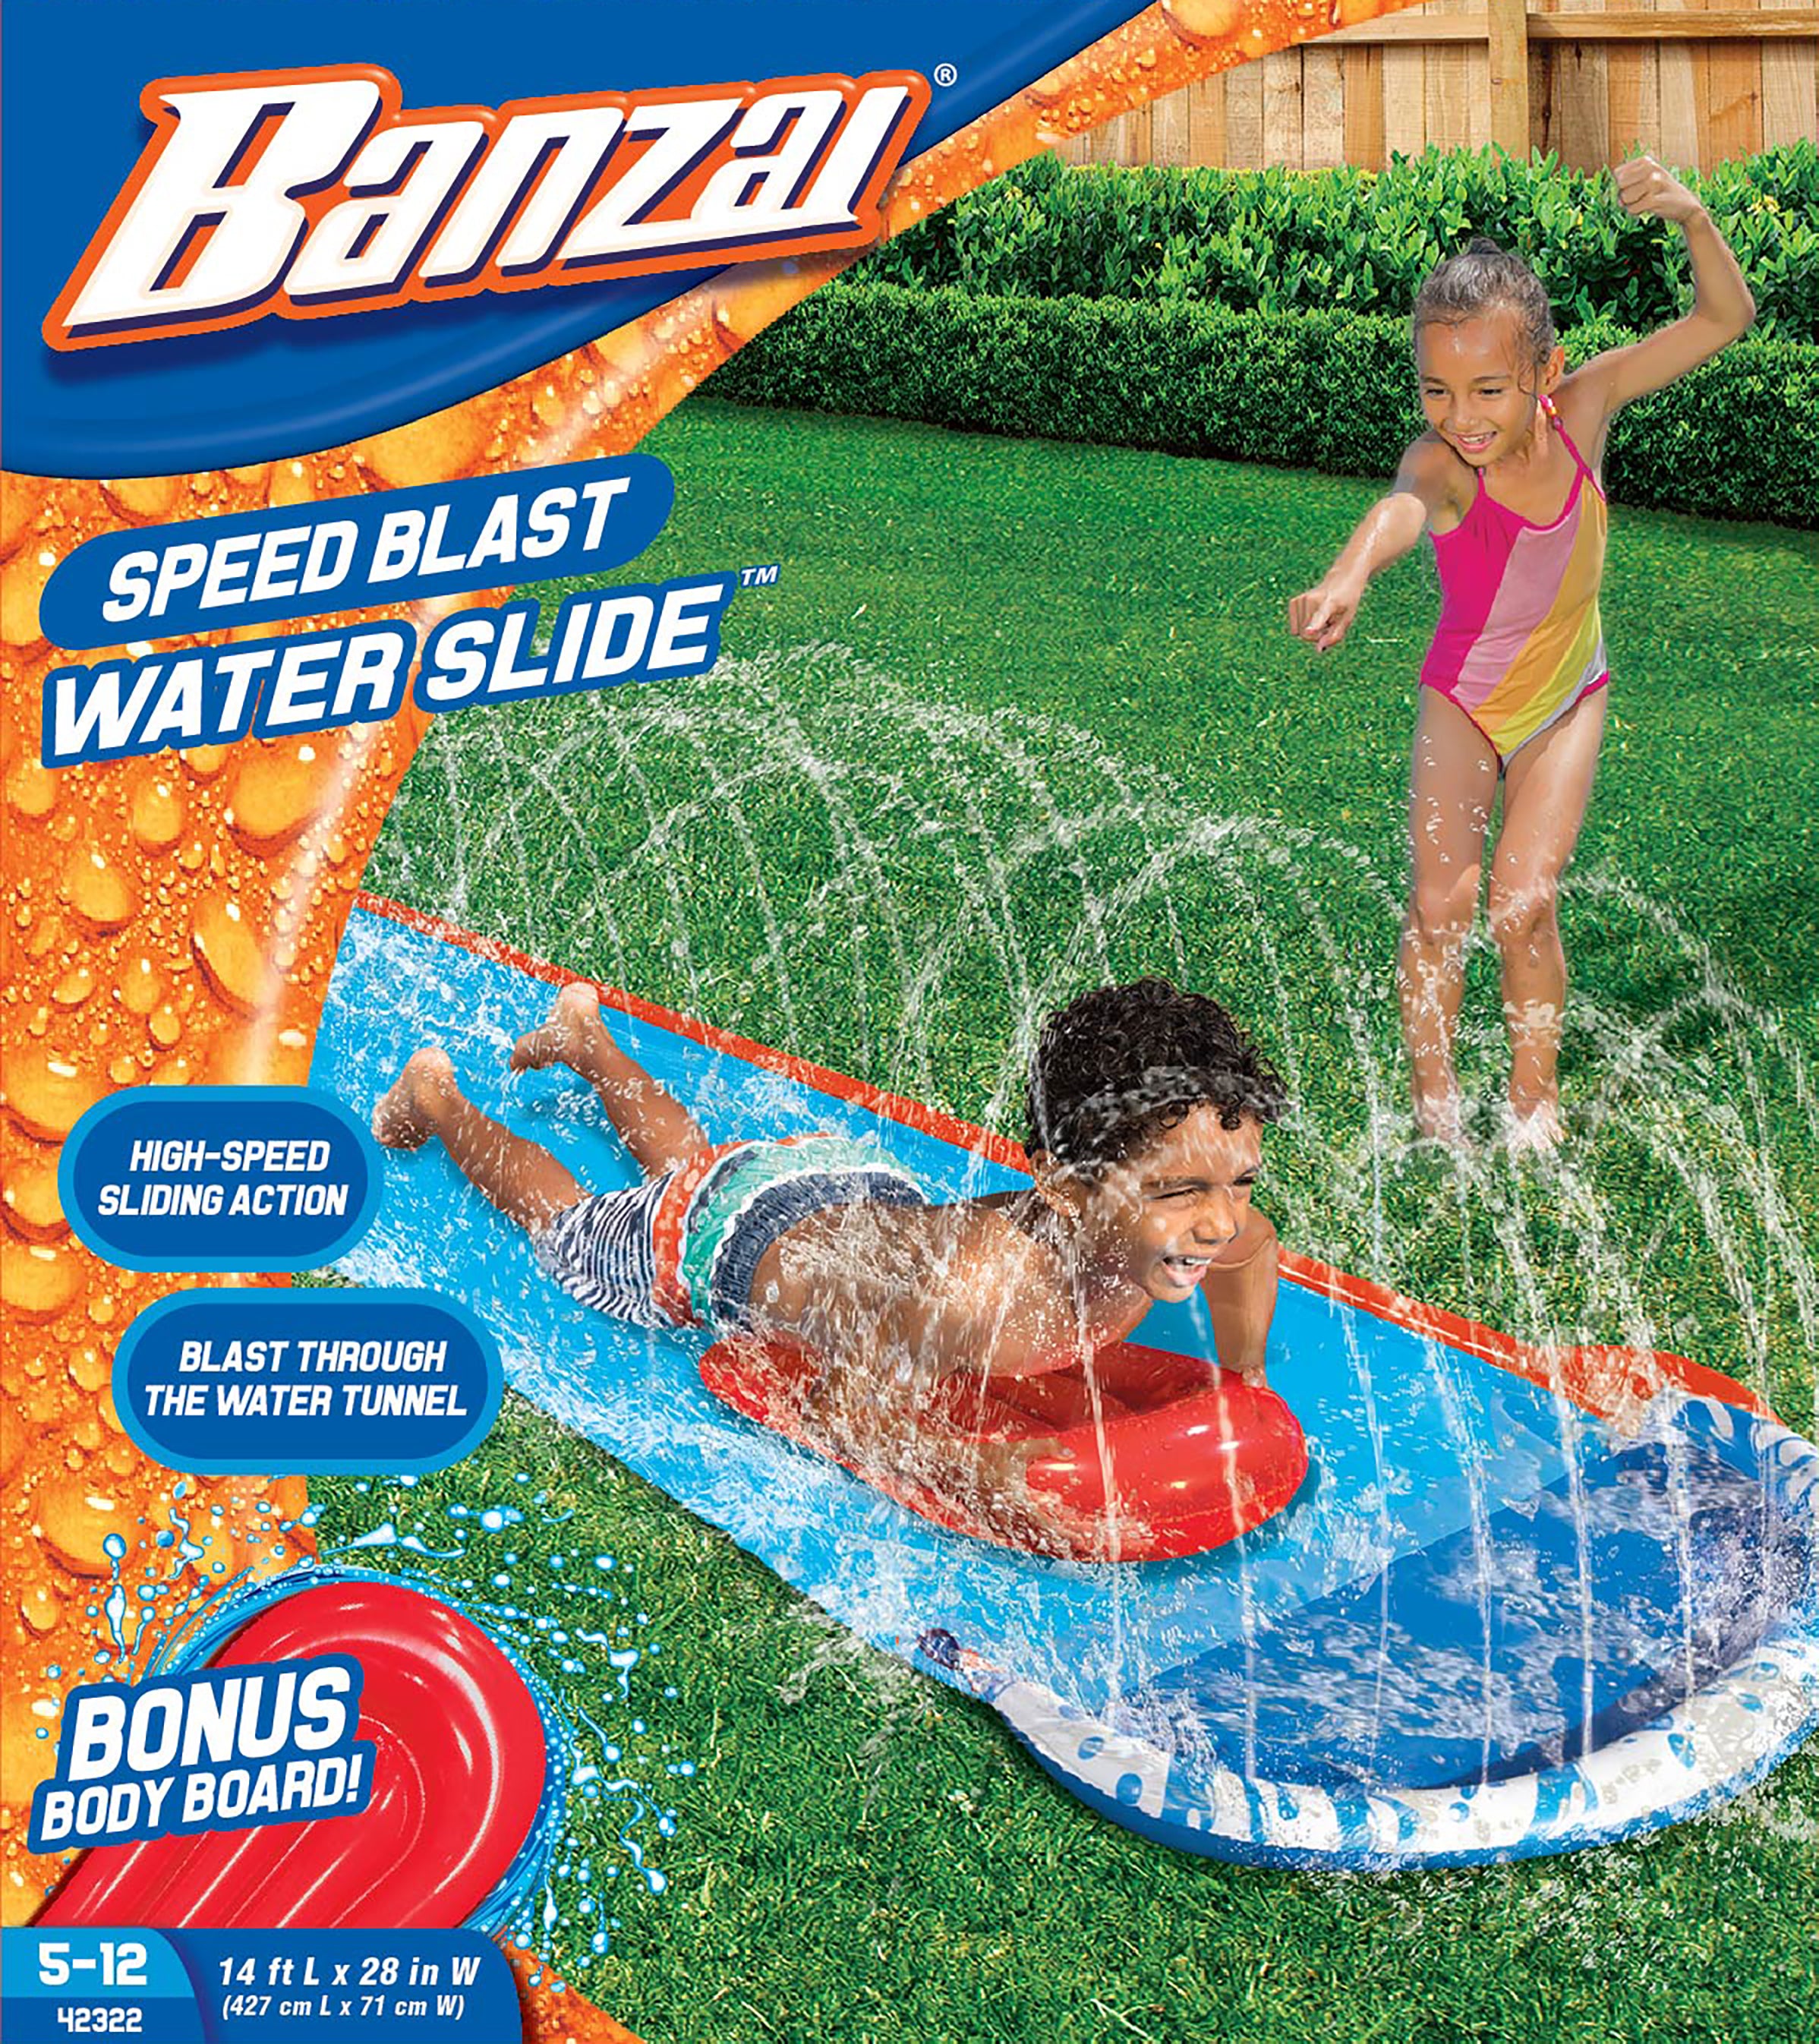 Banzai Speed Blaster Water Slides